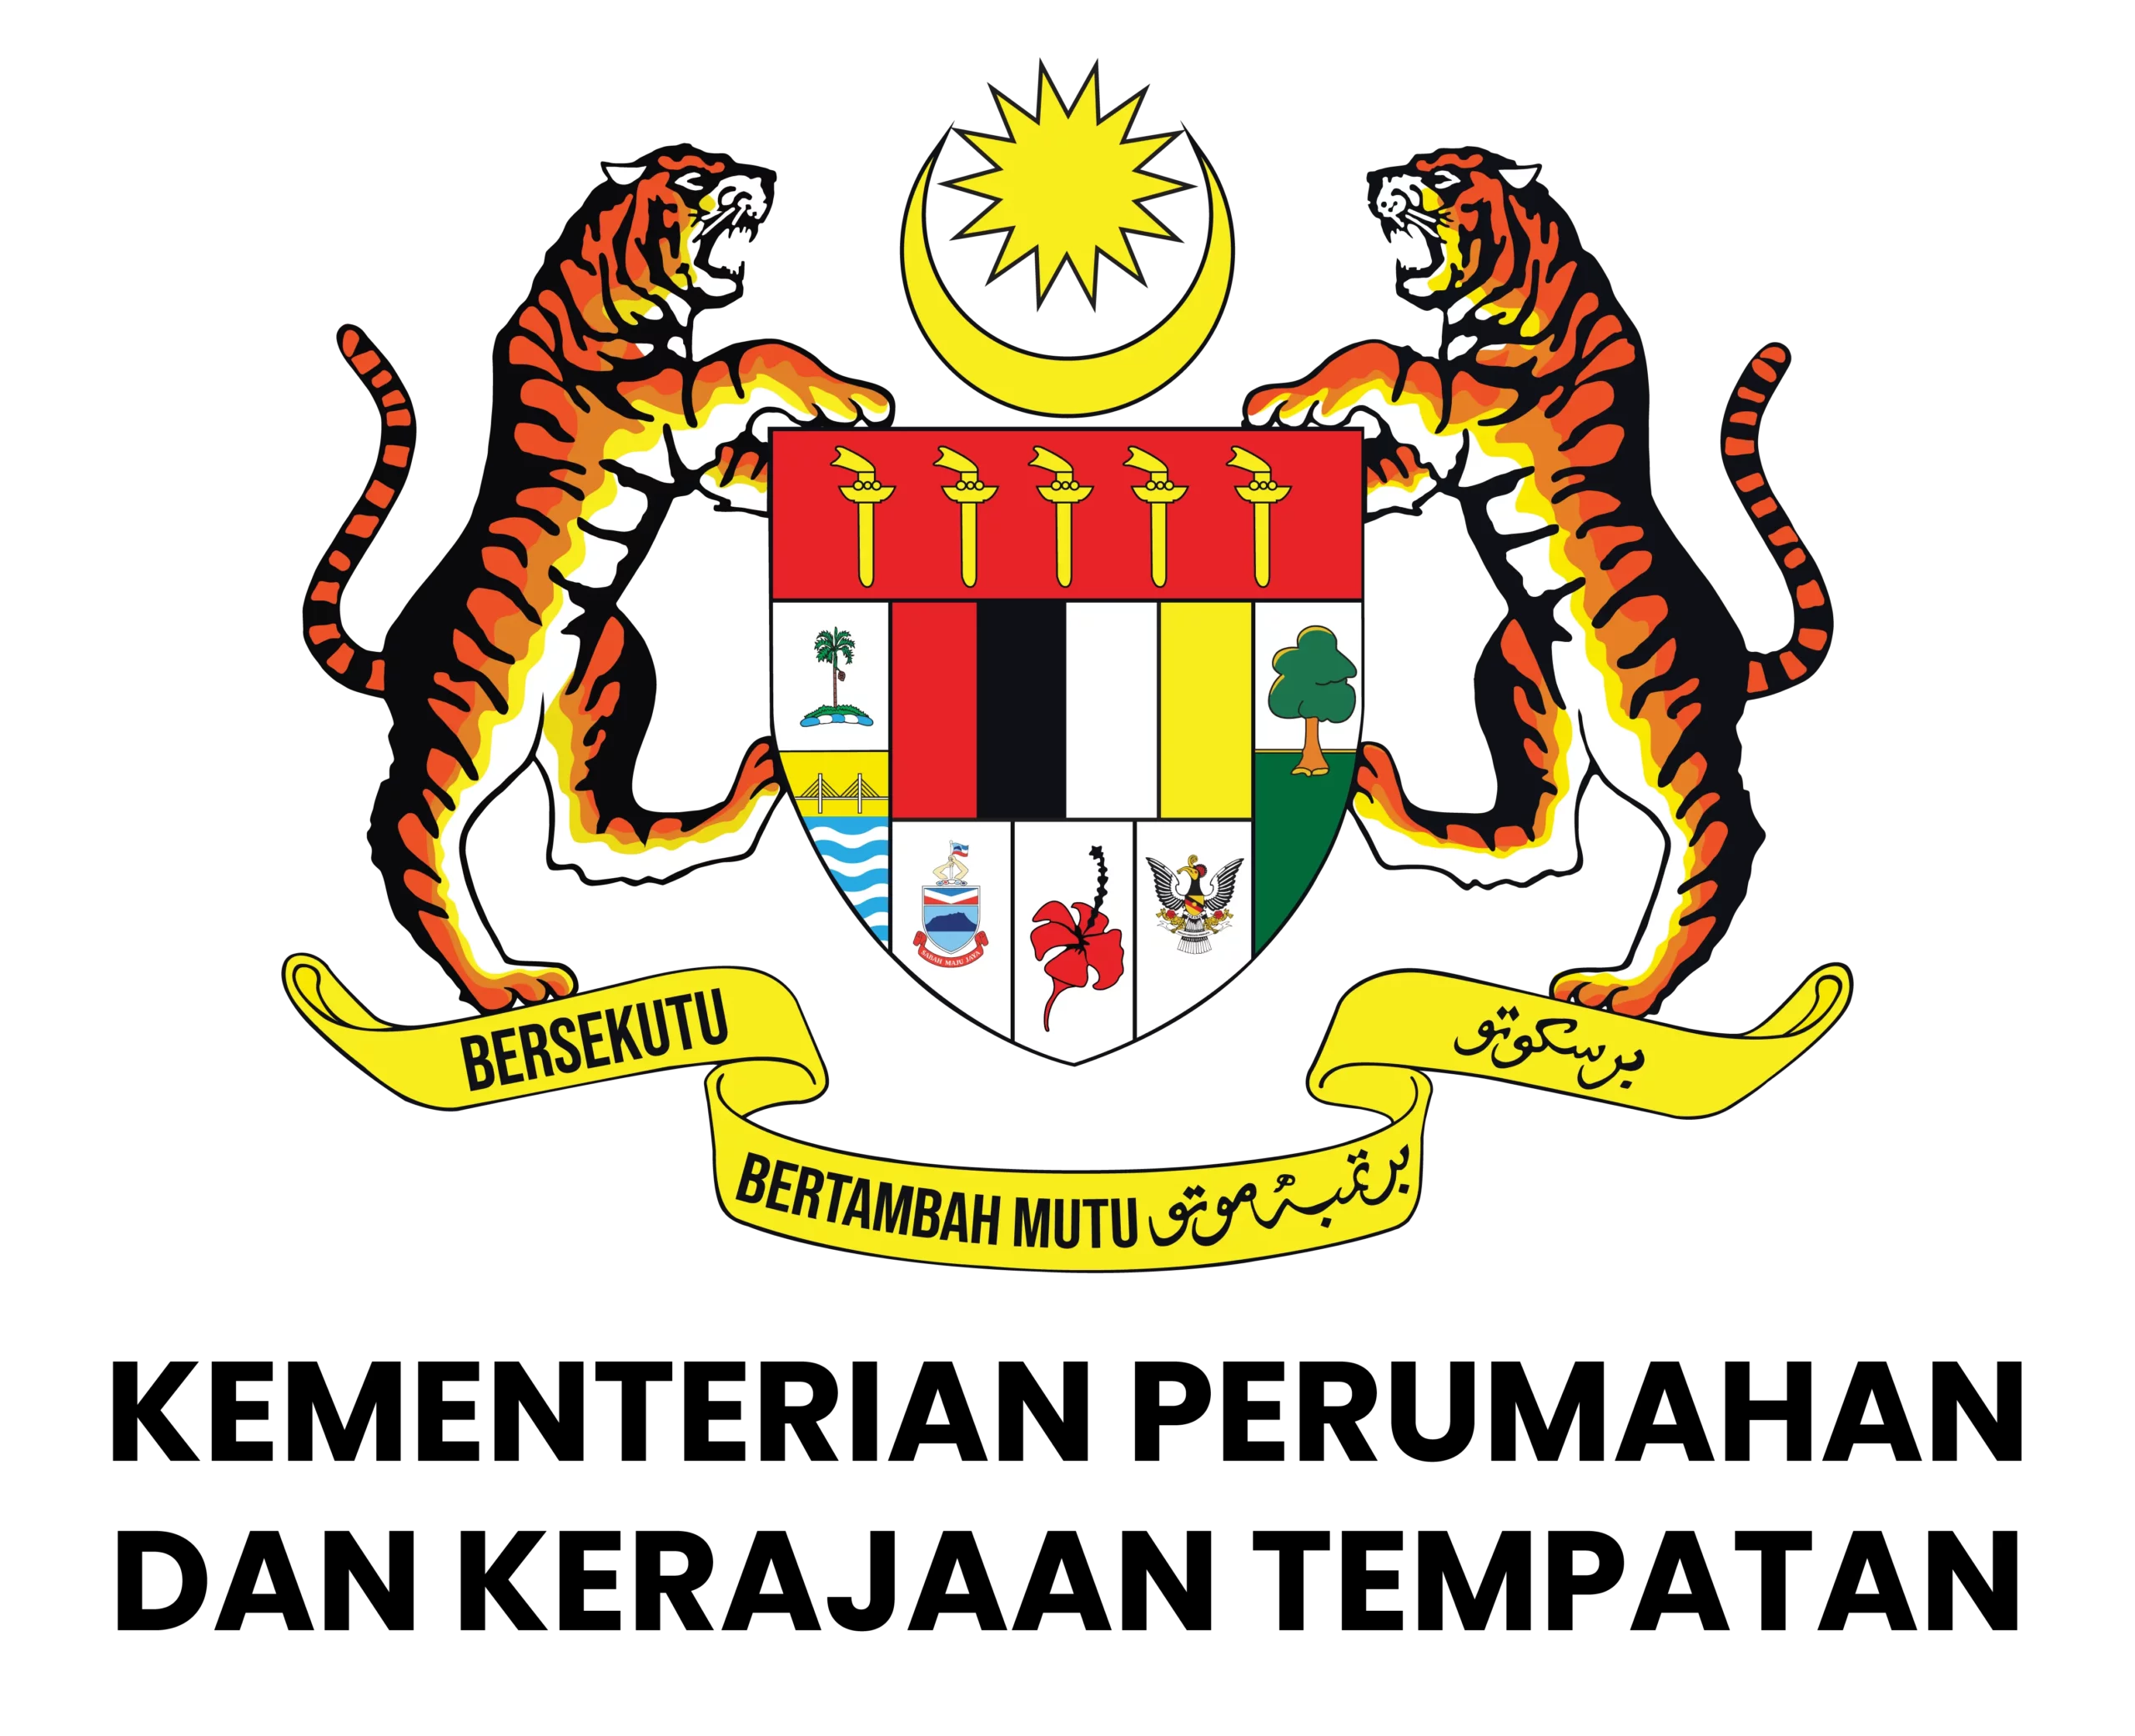 马来西亚房屋与地方政府发展部发展商黑名单 KPKT Senarai Hitam Pemaju Perumahan